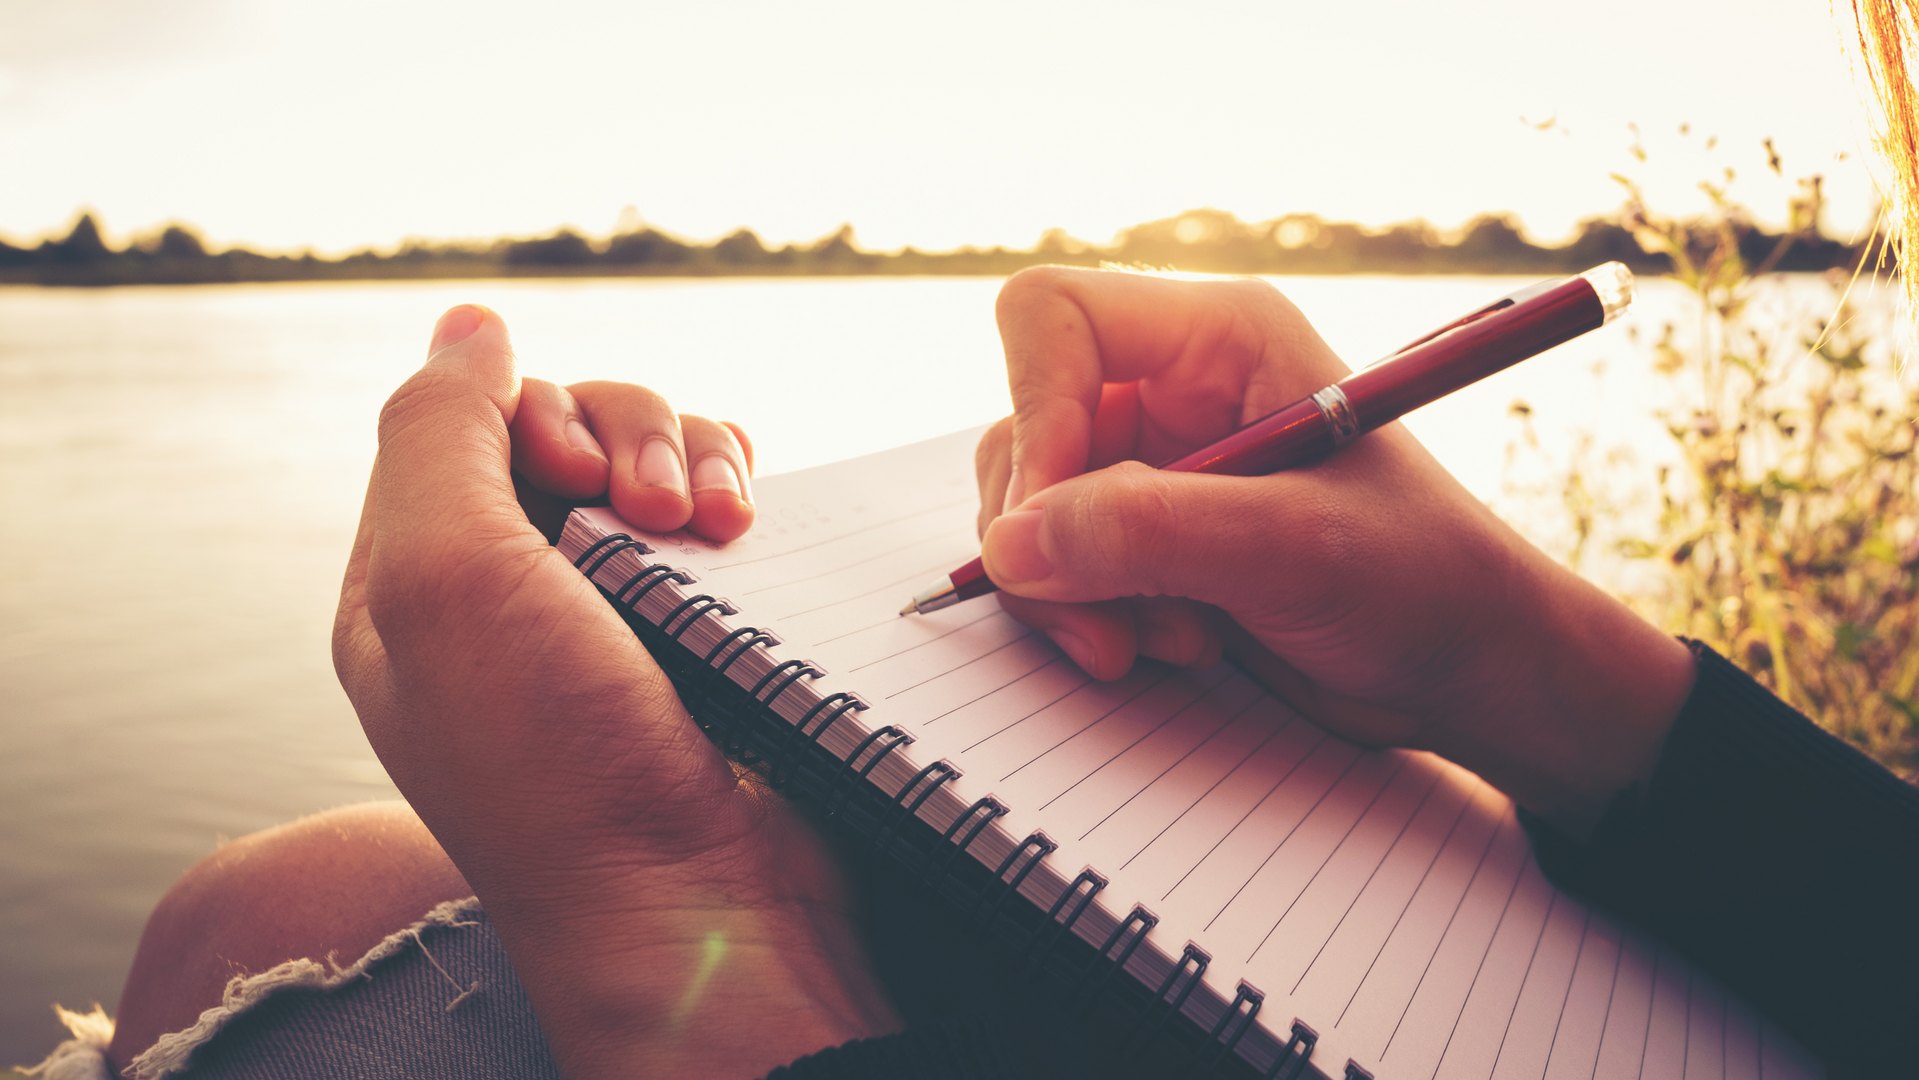 چگونه نوشتن را تمرین کنیم: ده نکته برای تقویت مهارتهای نوشتاری